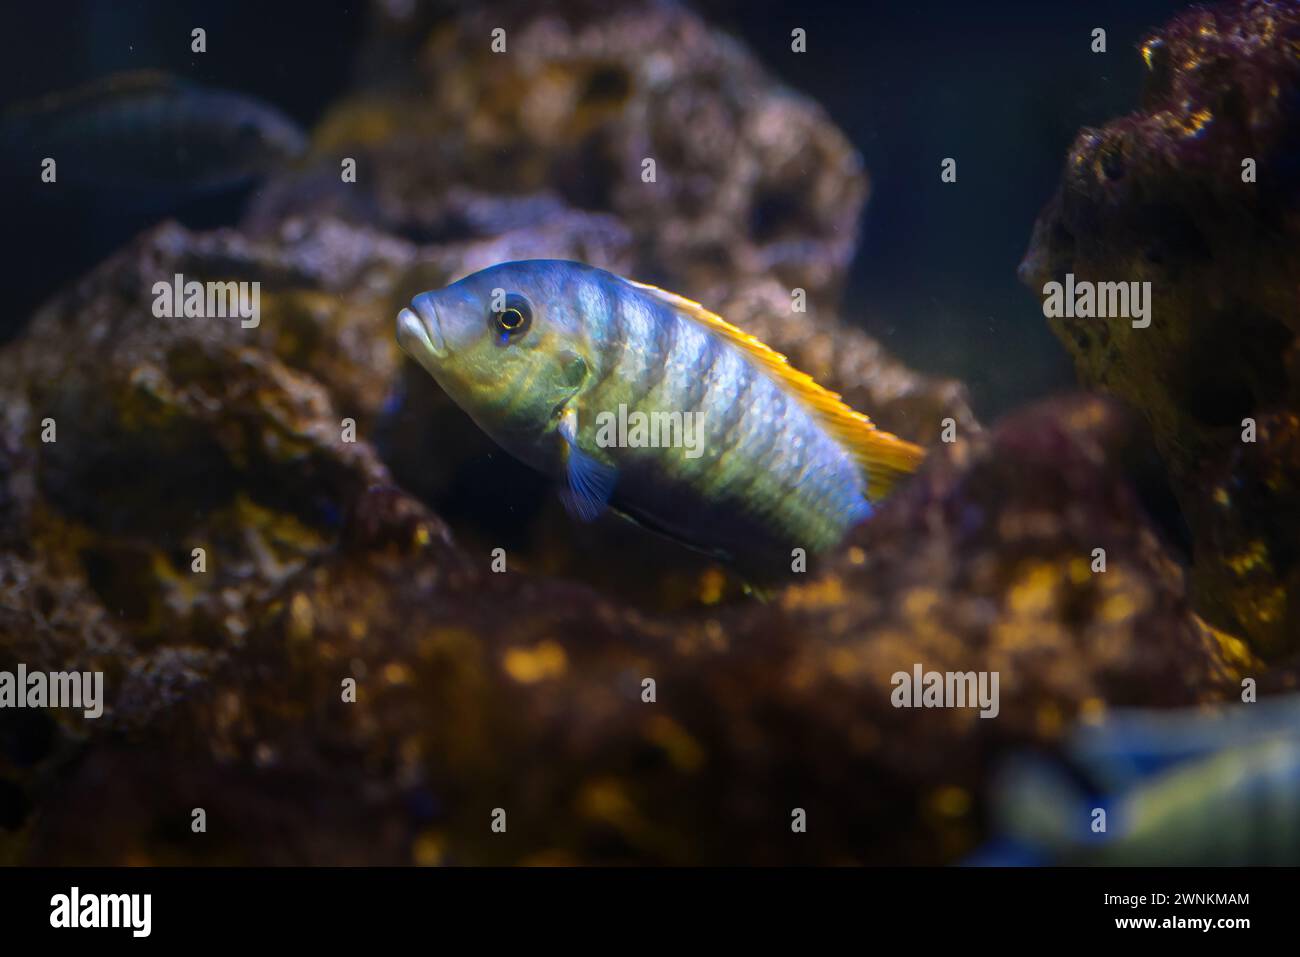 William's Mbuna (Maylandia greshakei) - Freshwater Fish Stock Photo